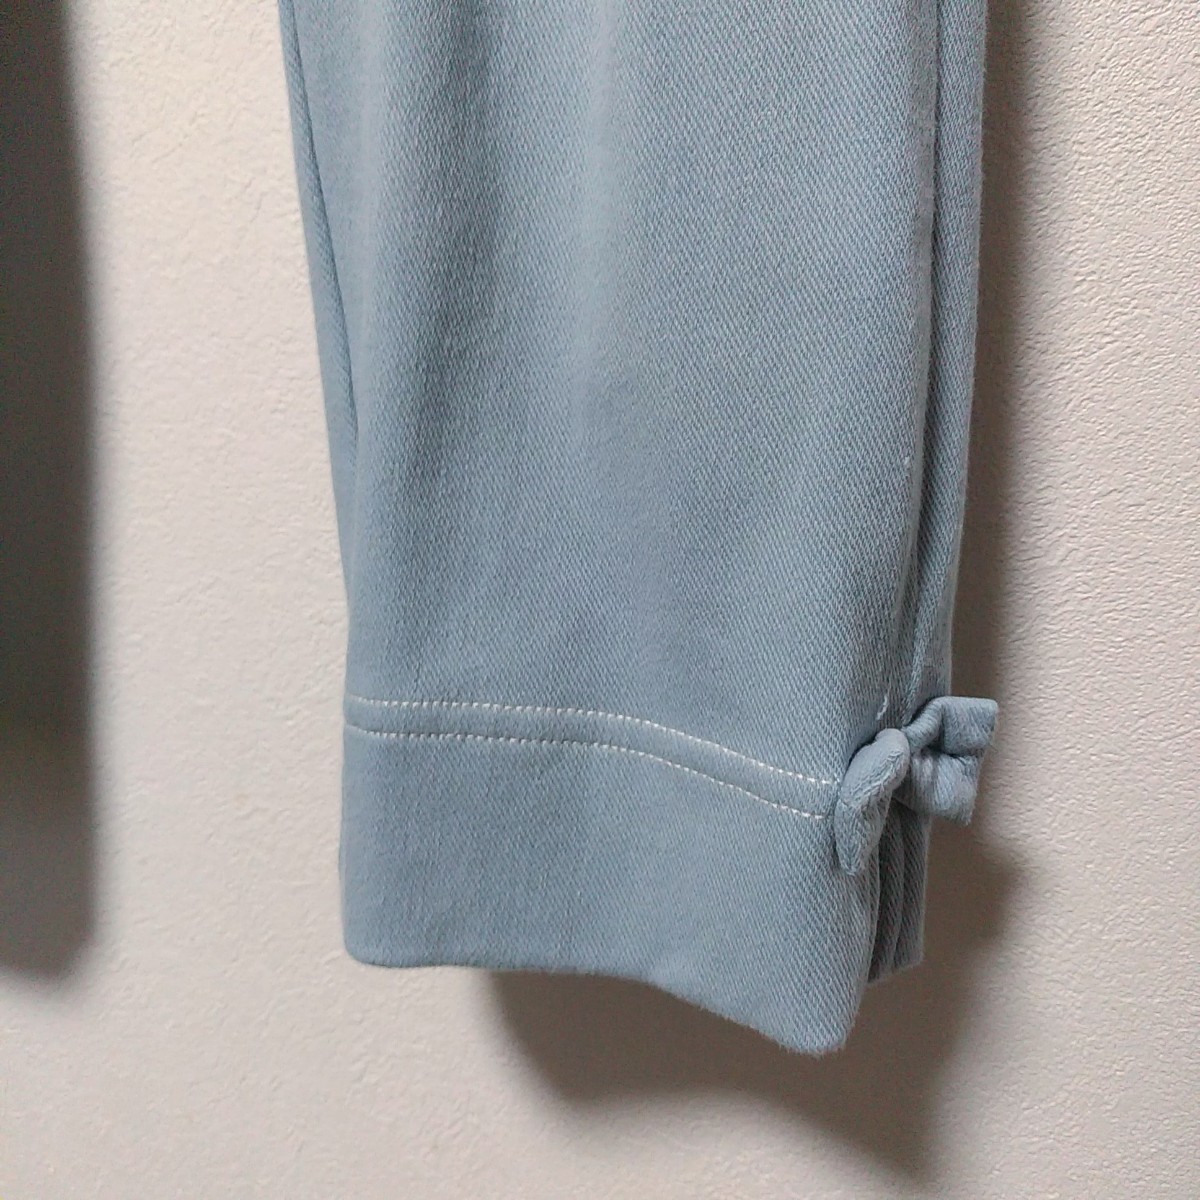  Toro wa Lapin (KP) кромка лента карман оборка брюки 140 бледно-голубой 